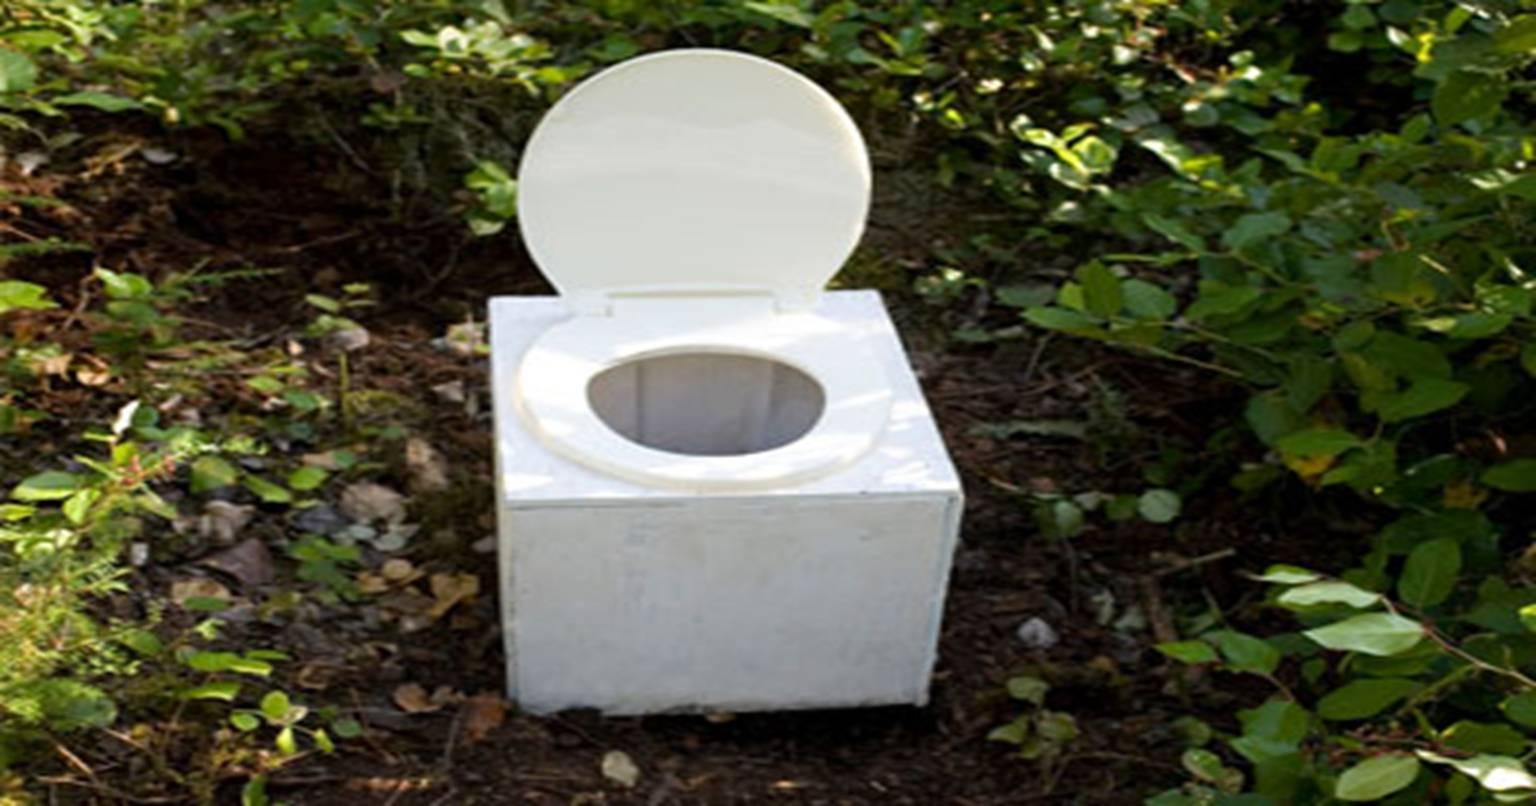 ‘वाटरलैस शौचालय’: पर्यावरण की रक्षा के लिए आने वाले समय का सबसे अच्छा विकल्प